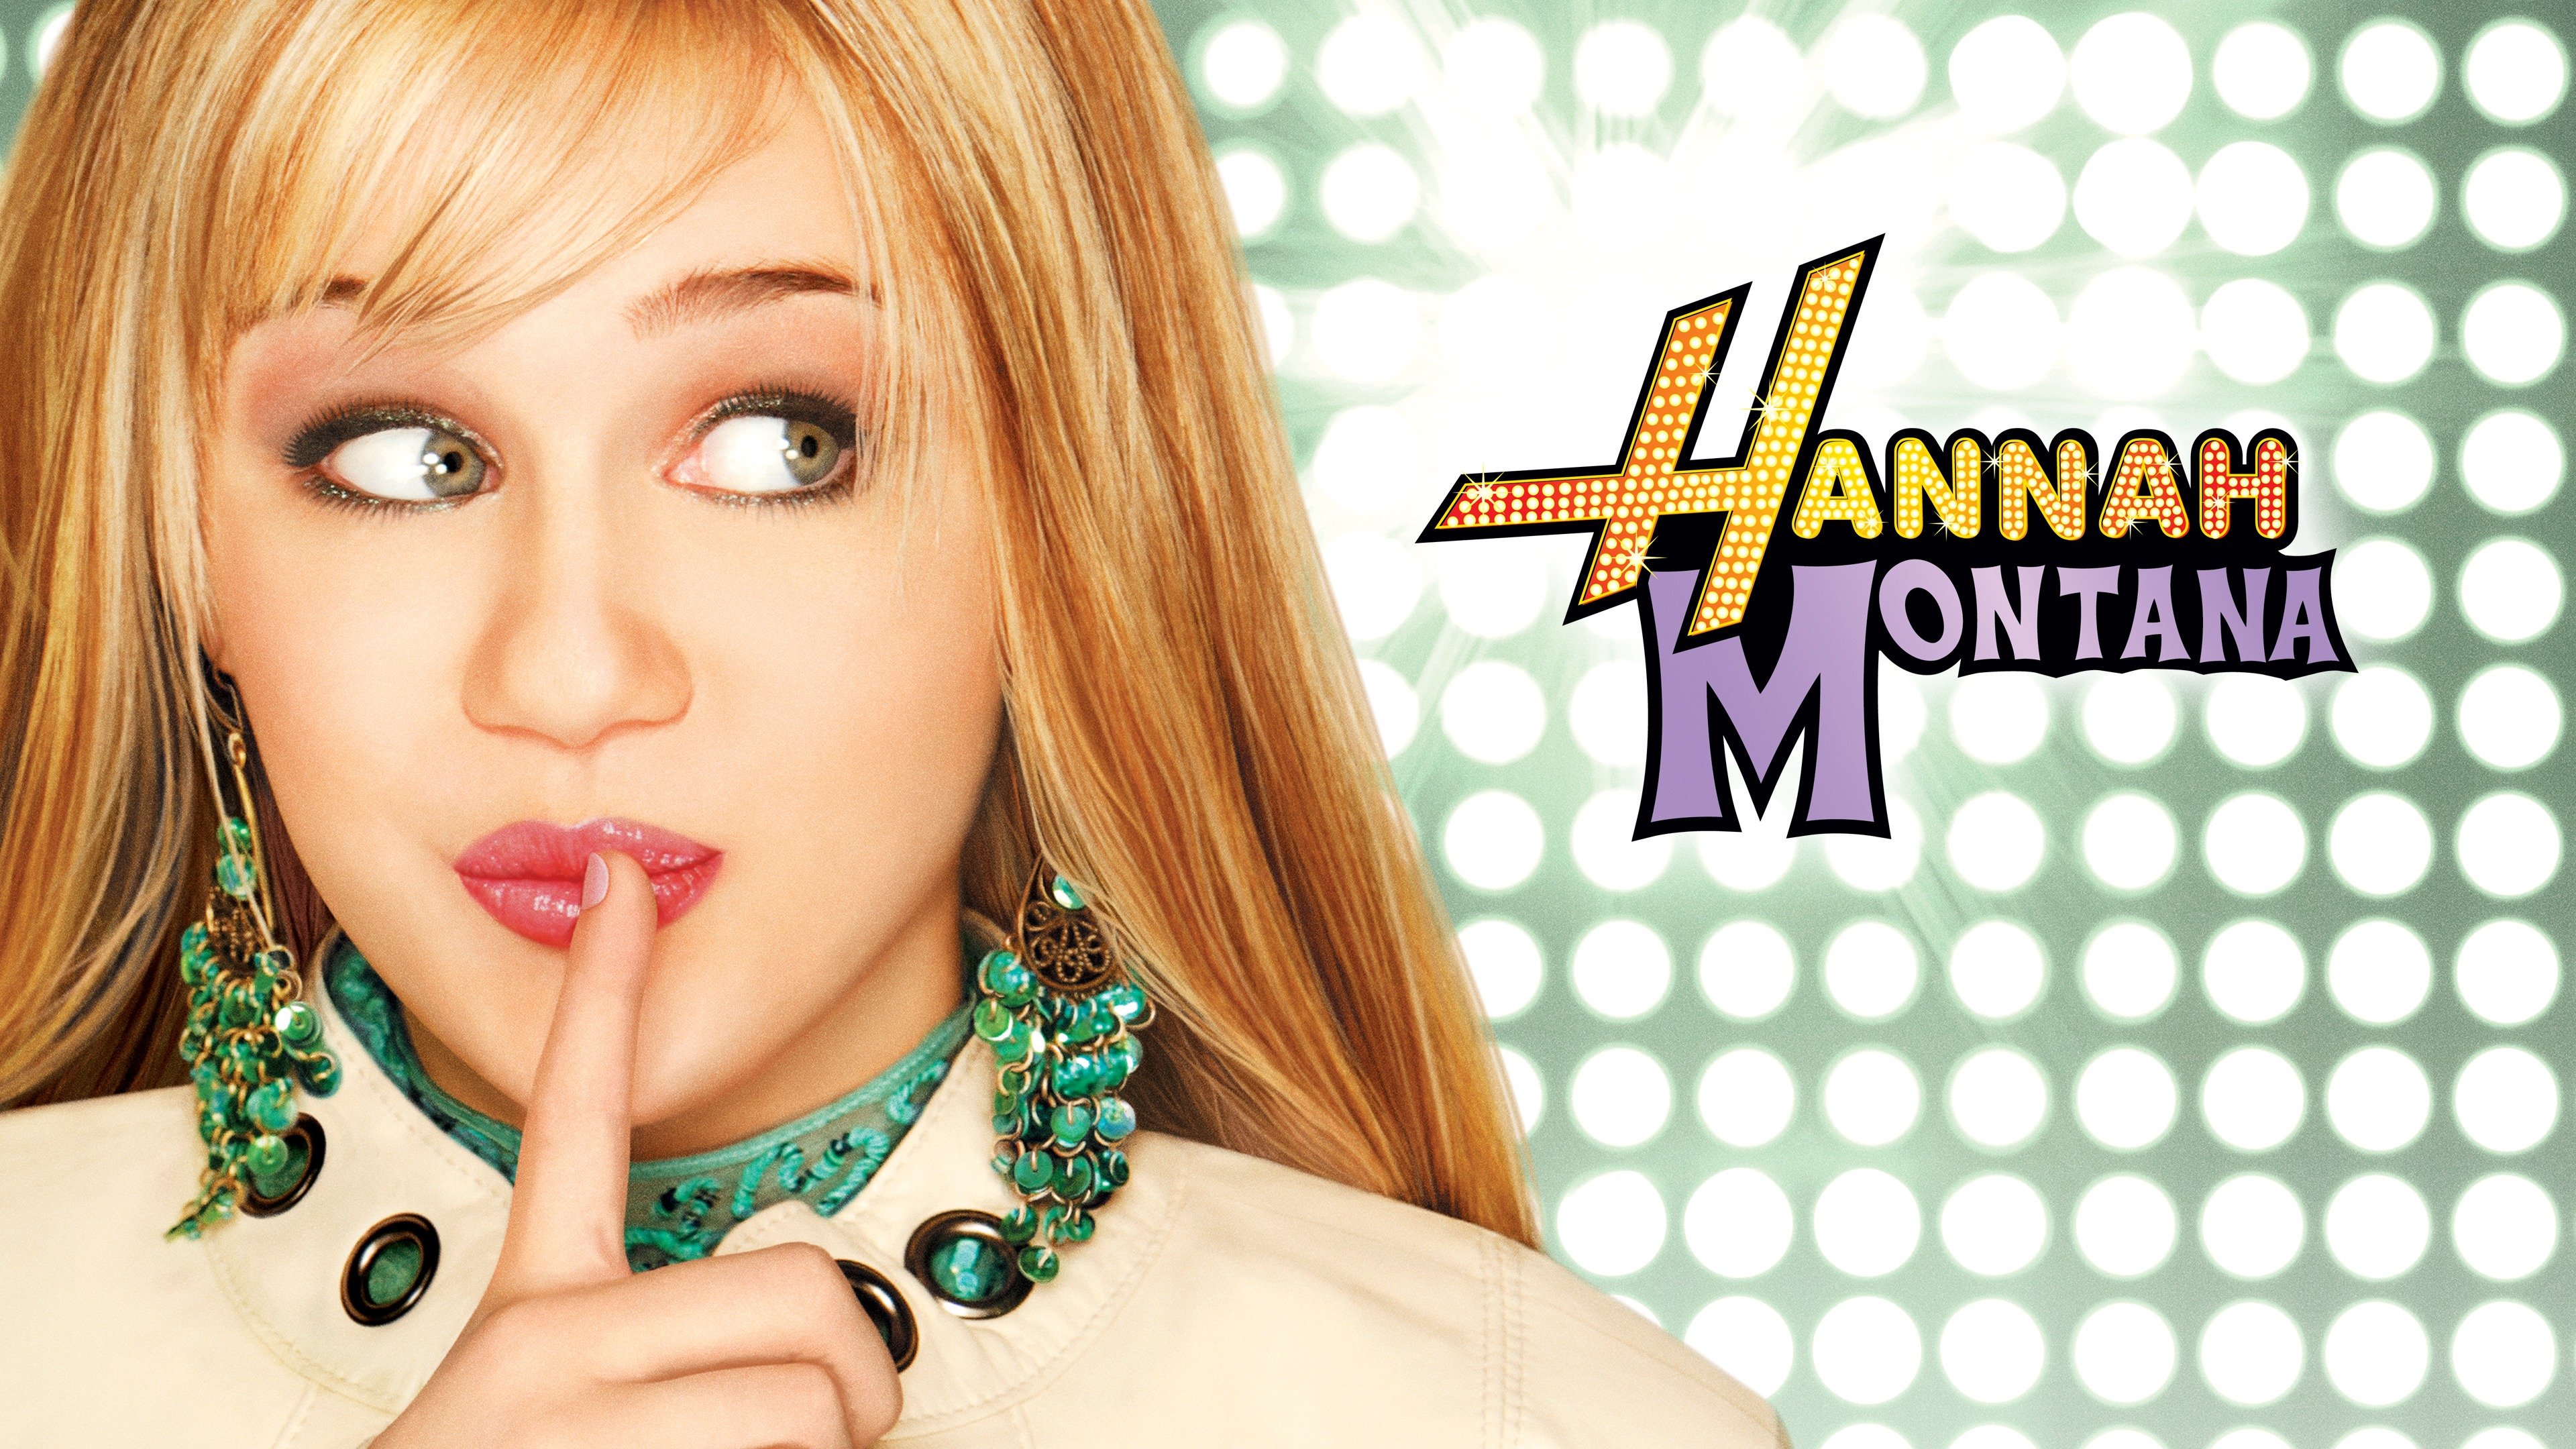 Miley Cyrus Hannah Montana The Movie Hannah Montana Season 4 Miley  Stewart miley cyrus desktop Wallpaper top hannah Montana png  PNGWing